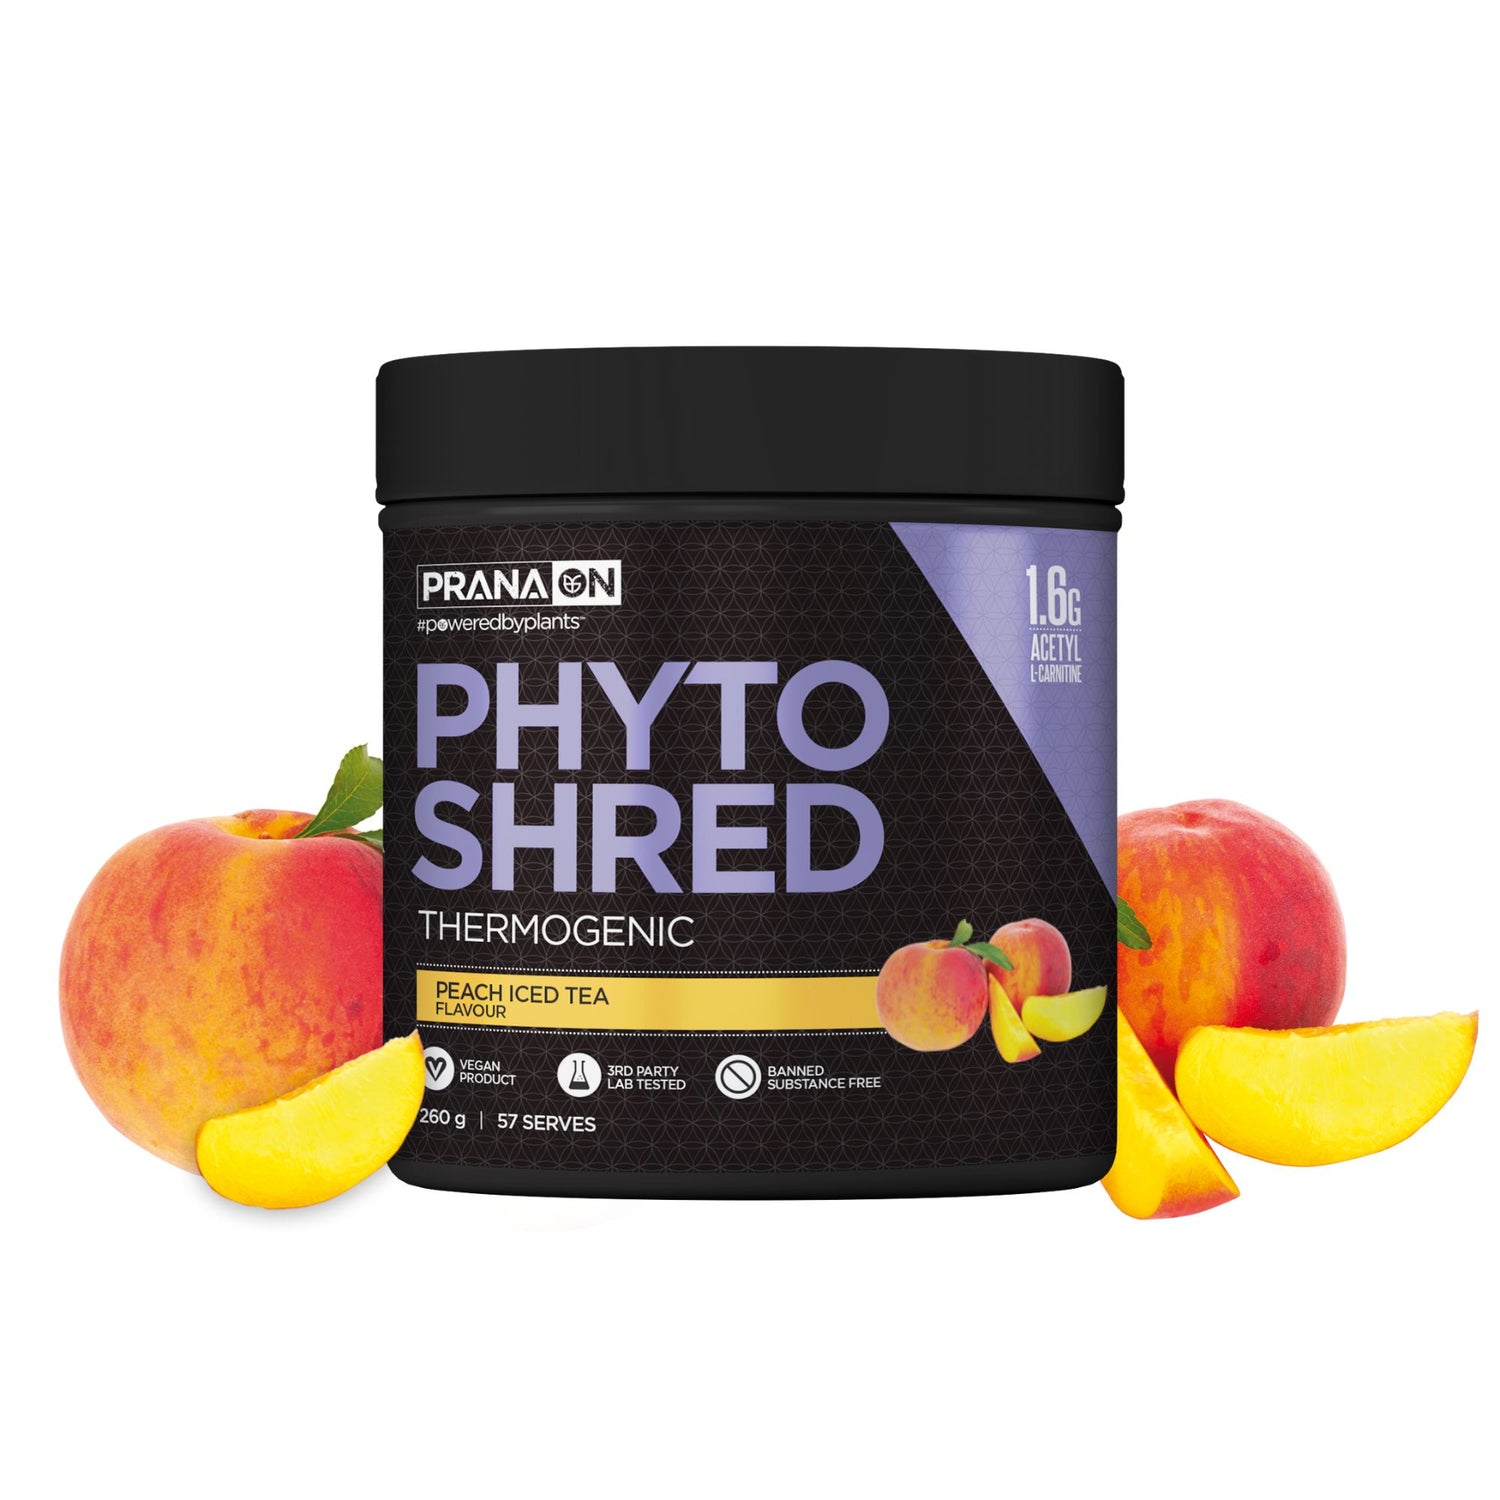 Phyto Shred